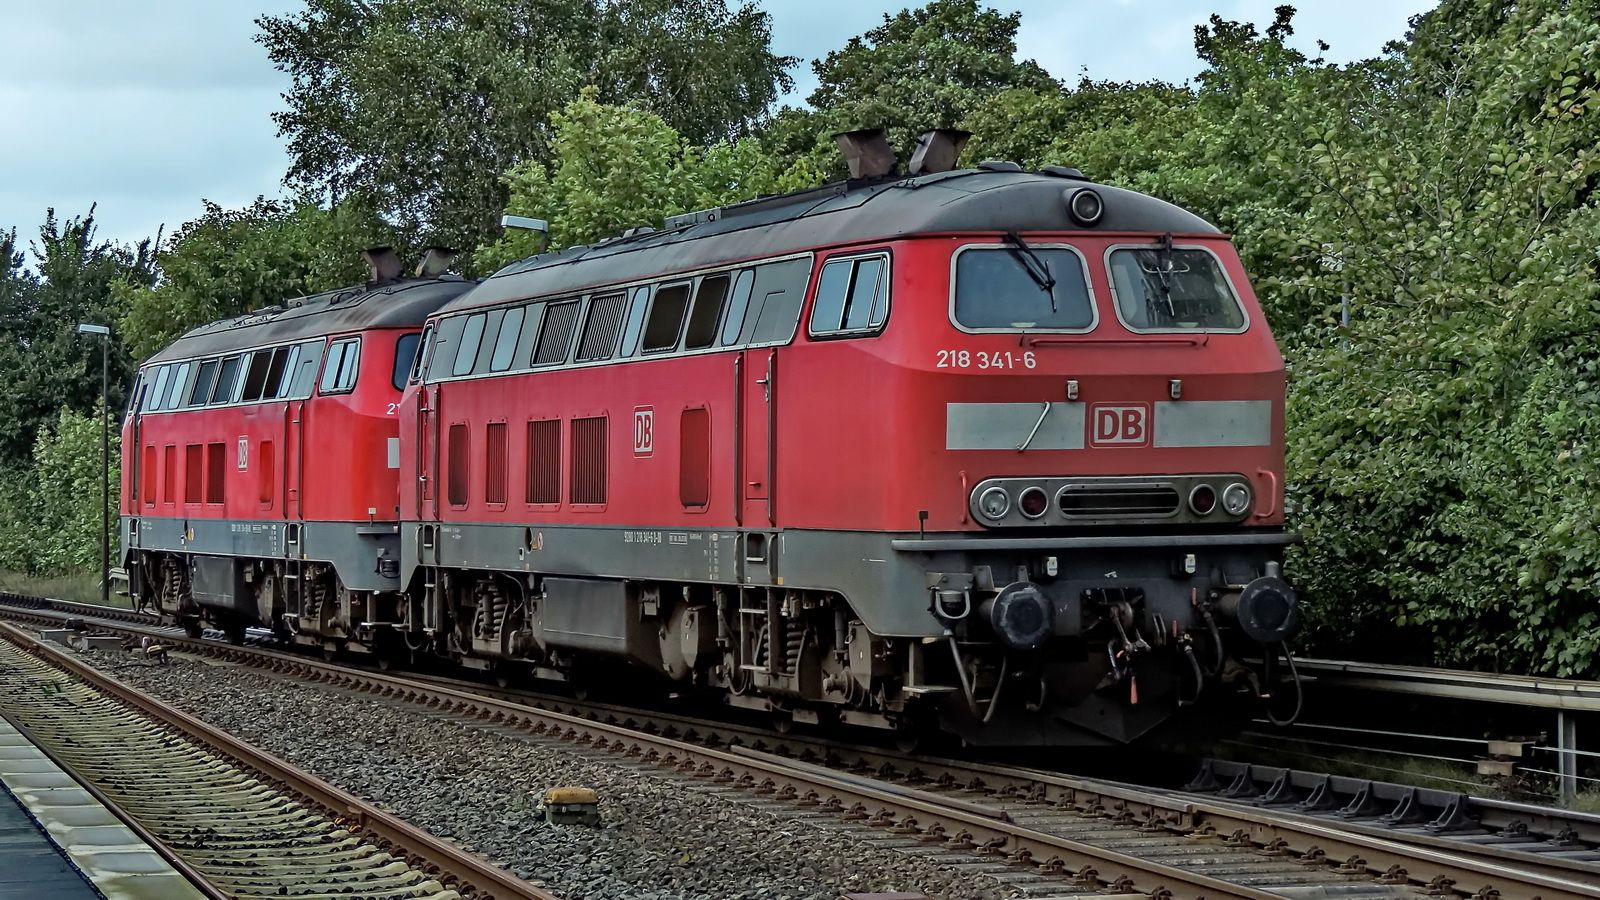 18 341-6 und 218 314-3 warten gemeinsam im Bahnhof Dagebüll auf ihren nächsten Einsatz.